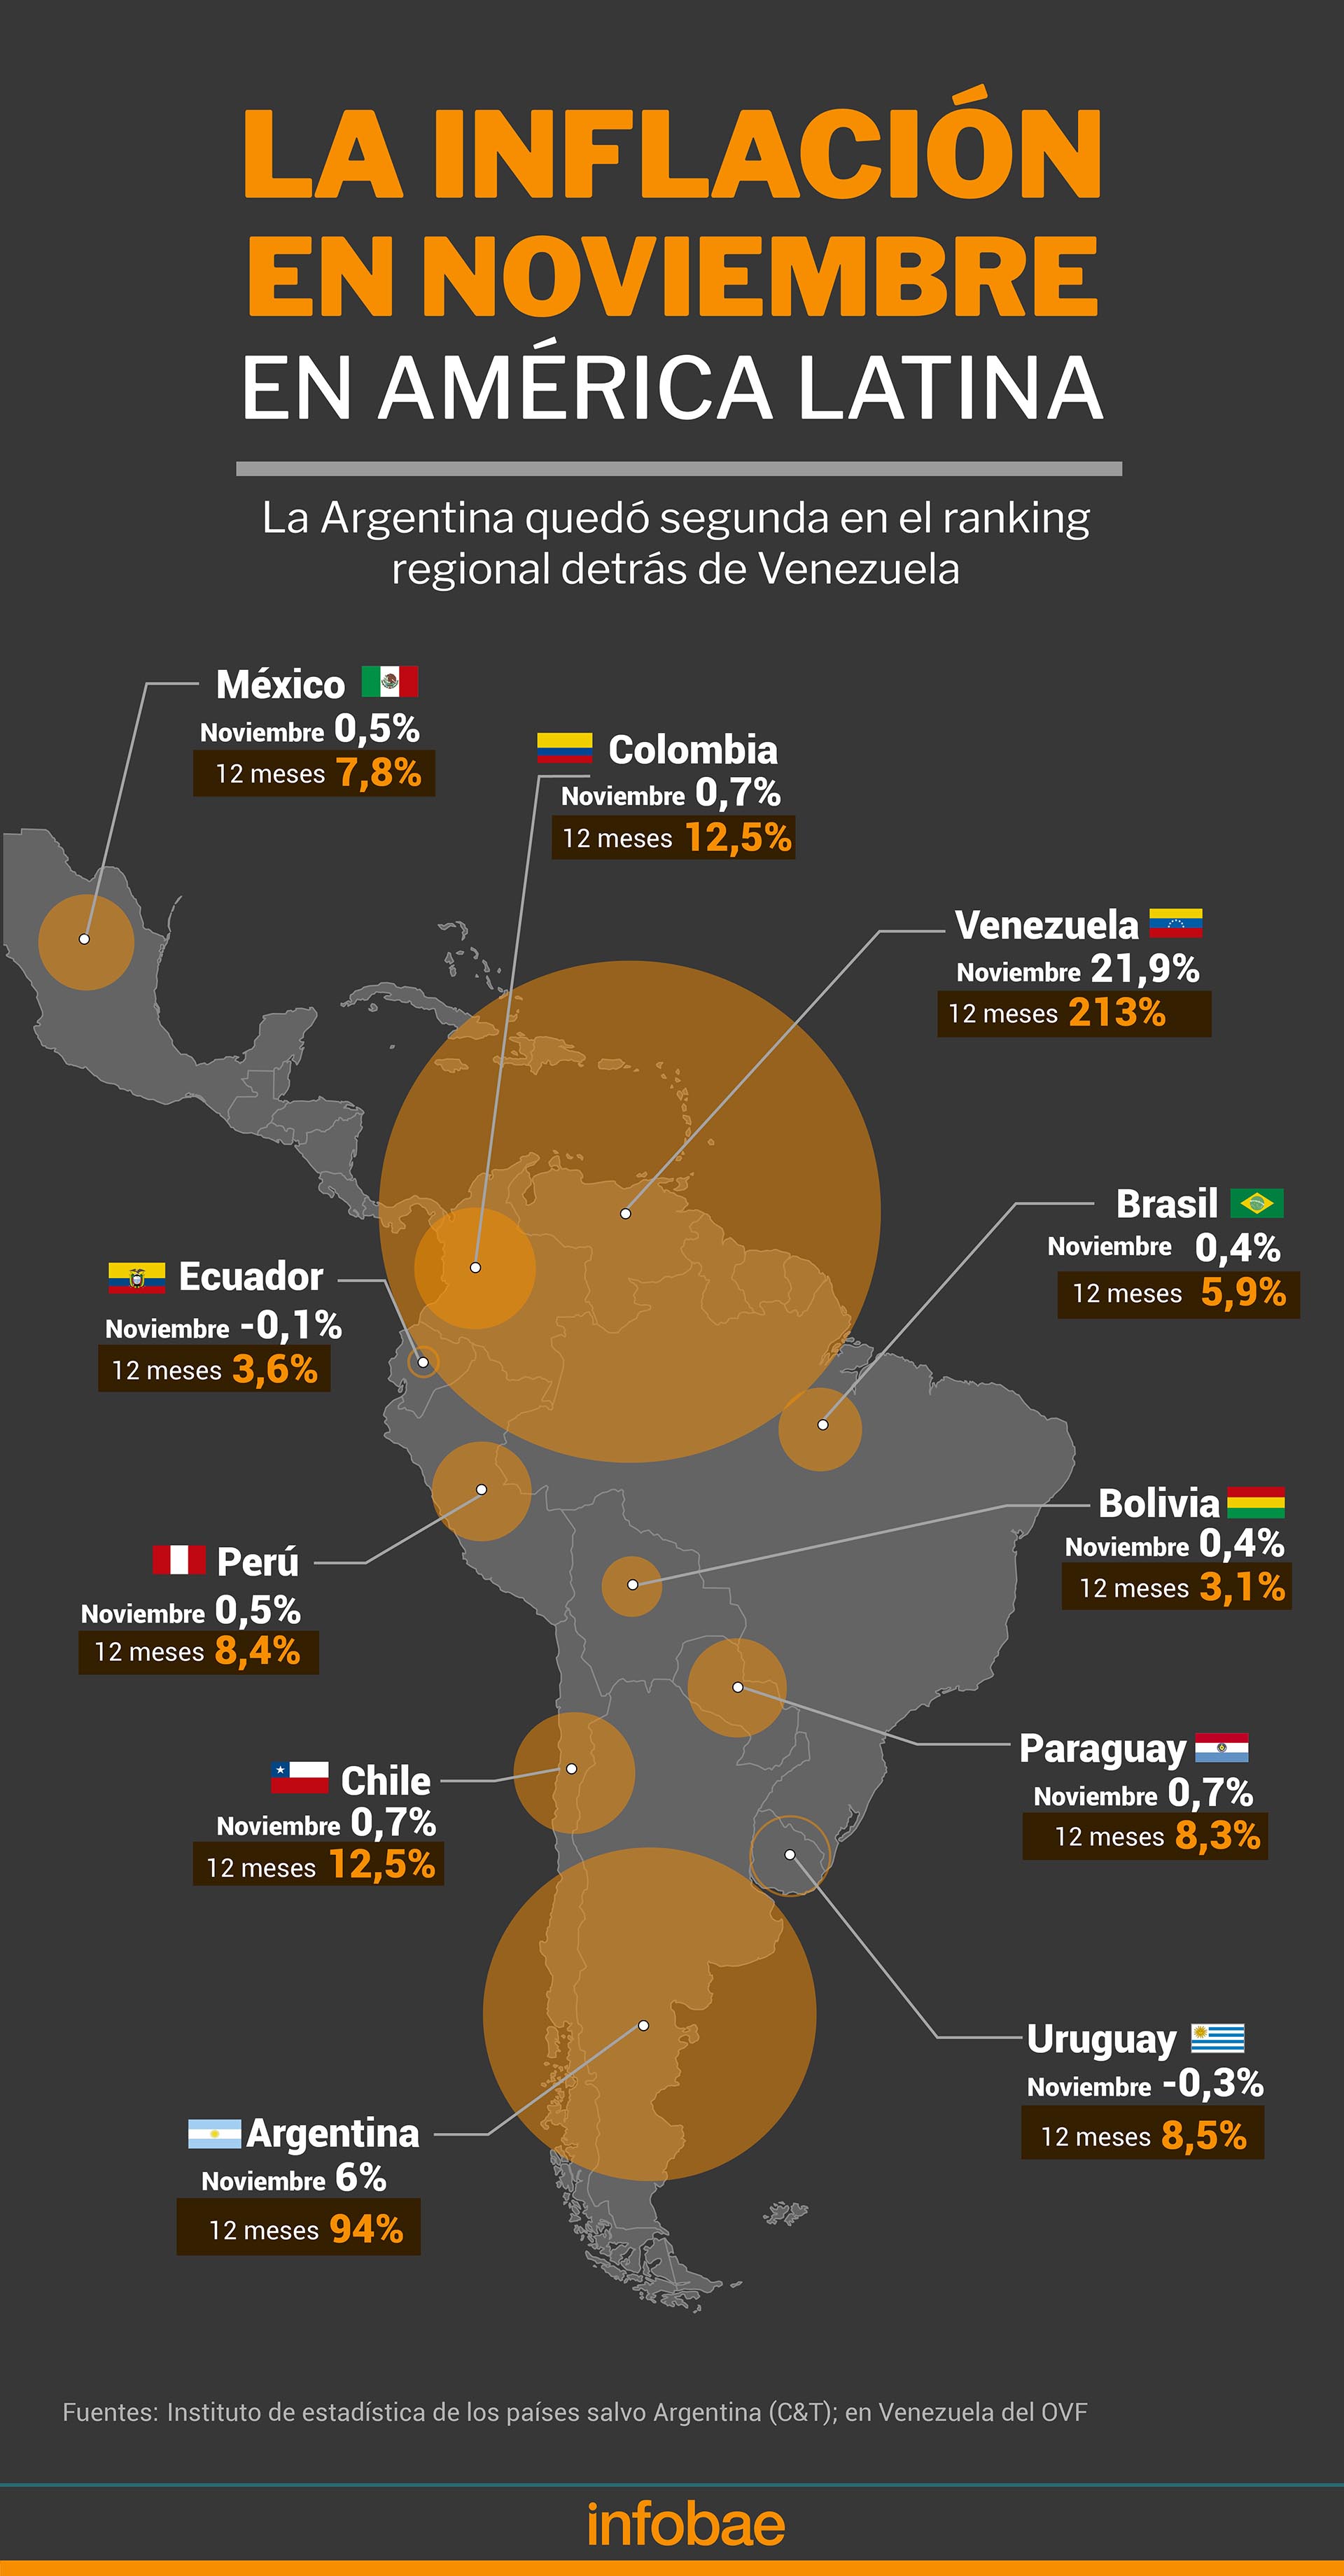 La inflación en noviembre en América Latina Fuente: institutos de estadística, salvo C&T para la Argentina y OVF de Venezuela Infografía de Marcelo Regalado 